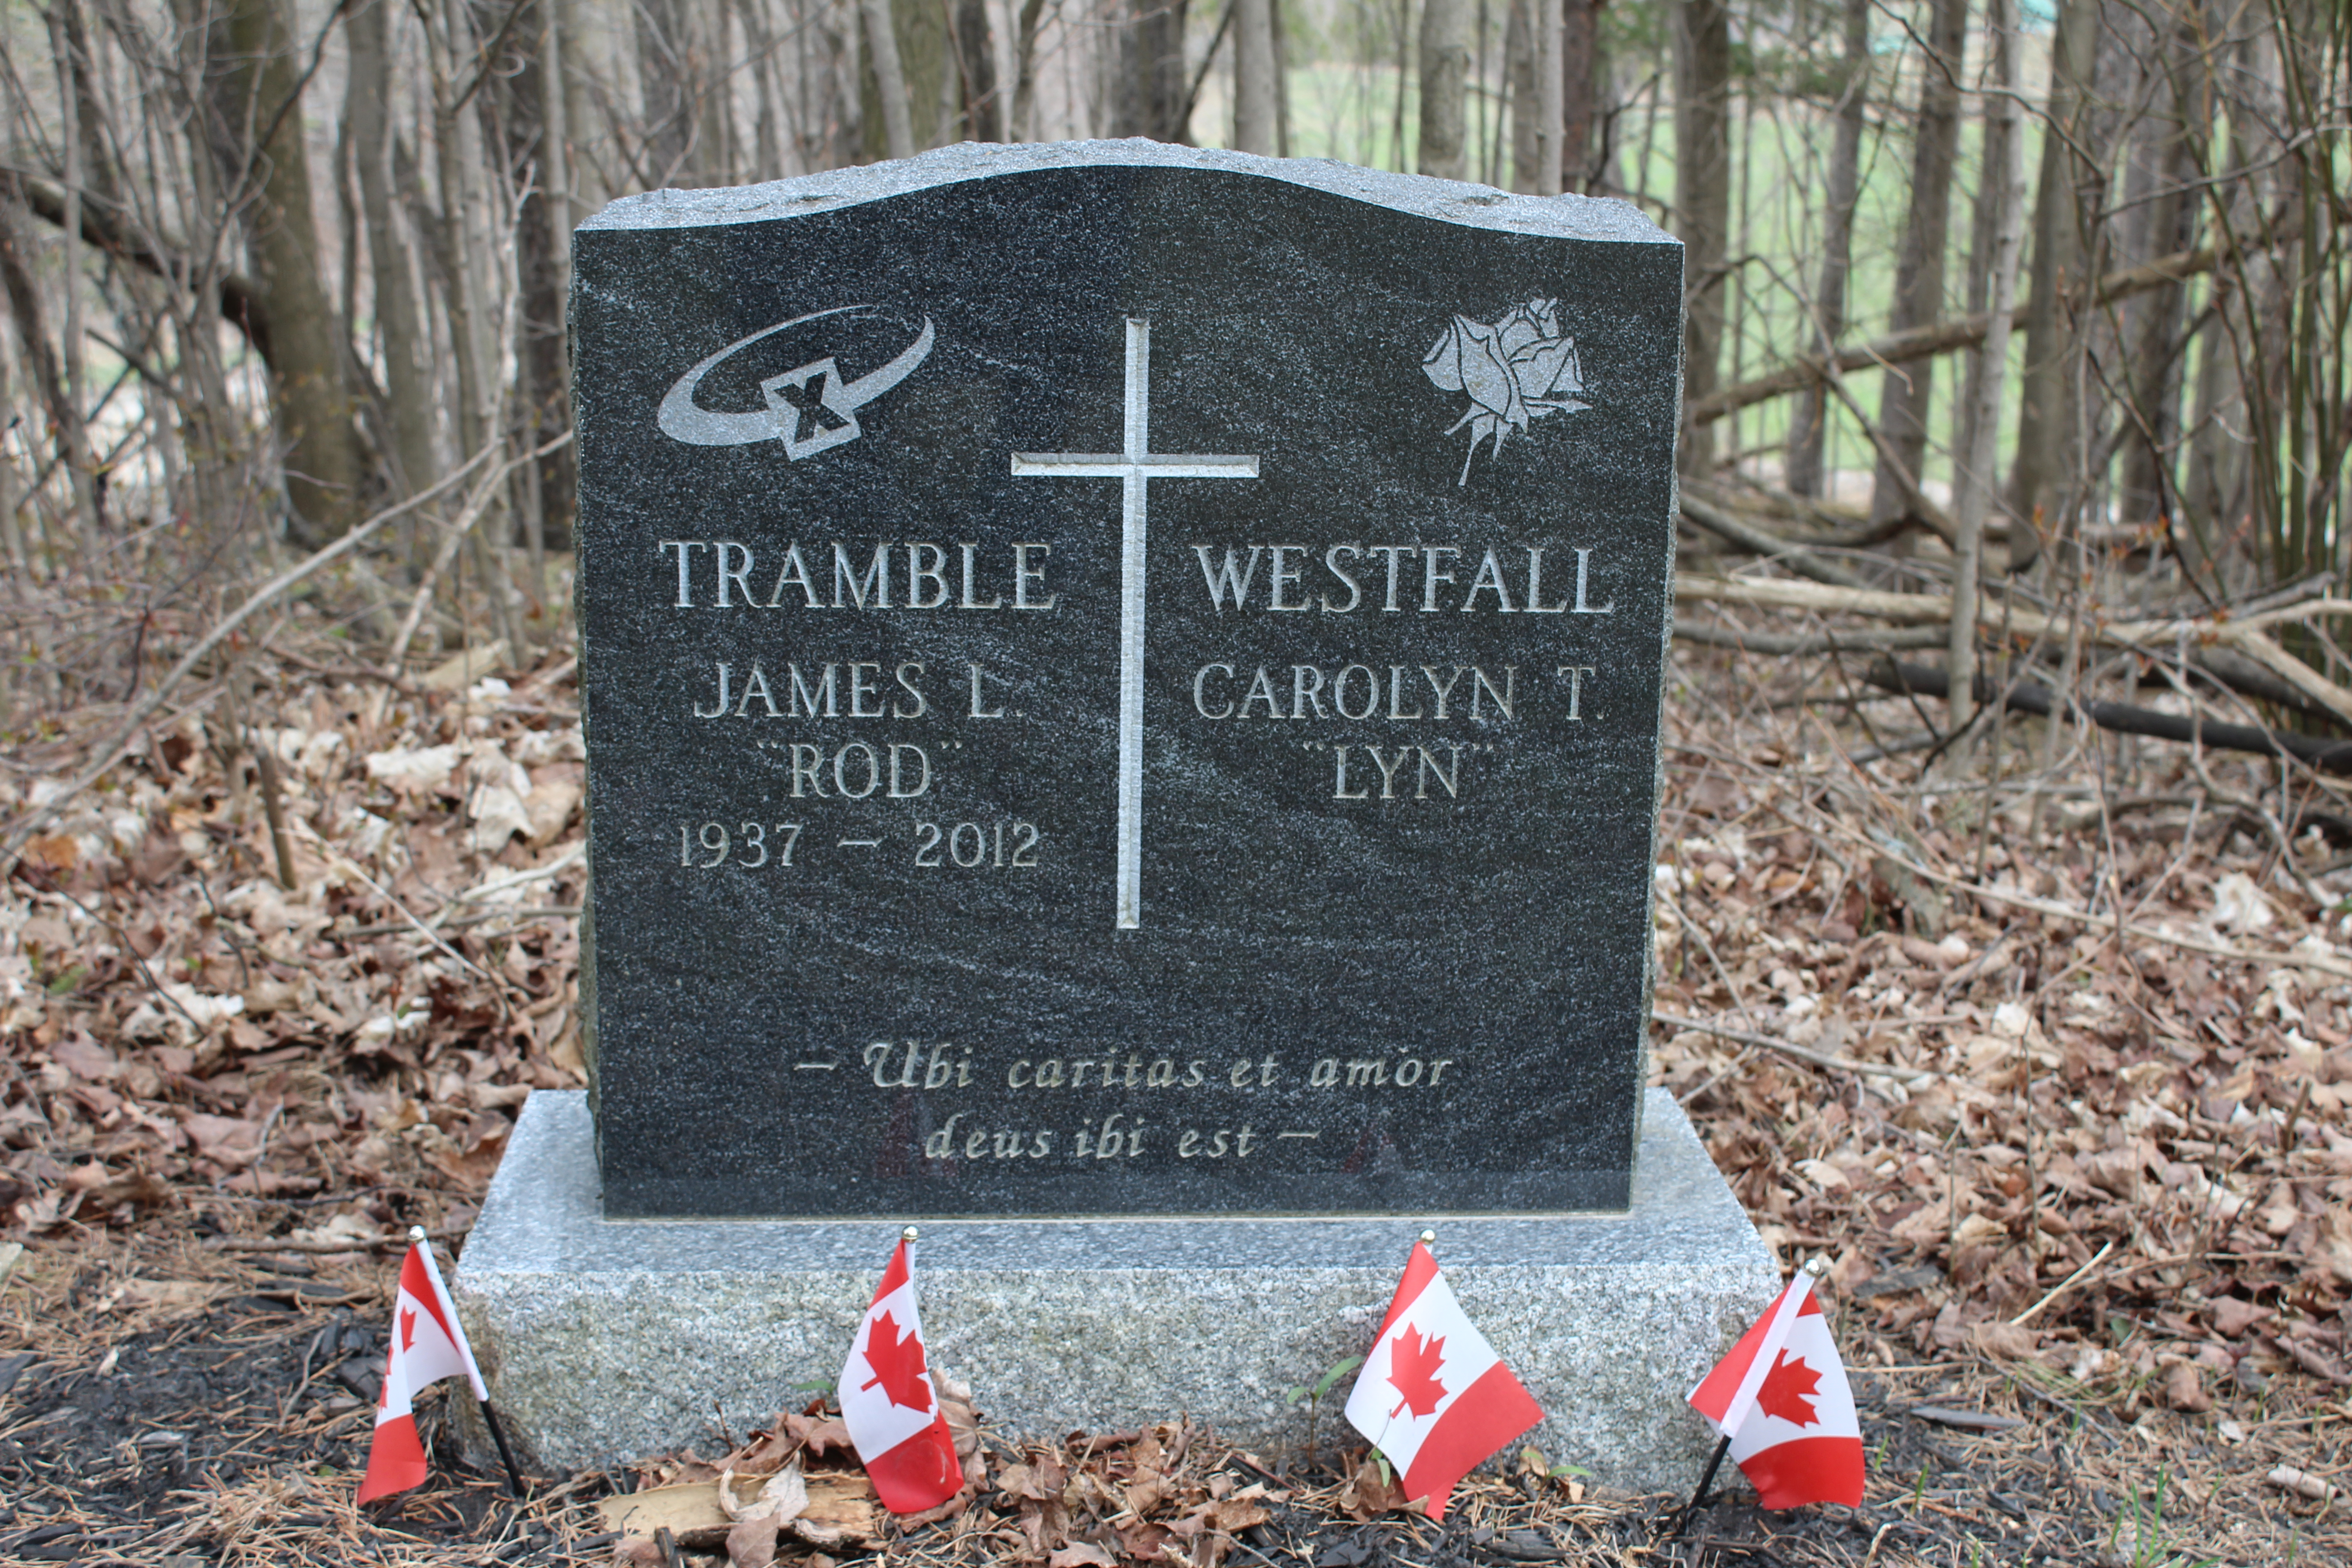 James Tramble and Carolyn Westfall